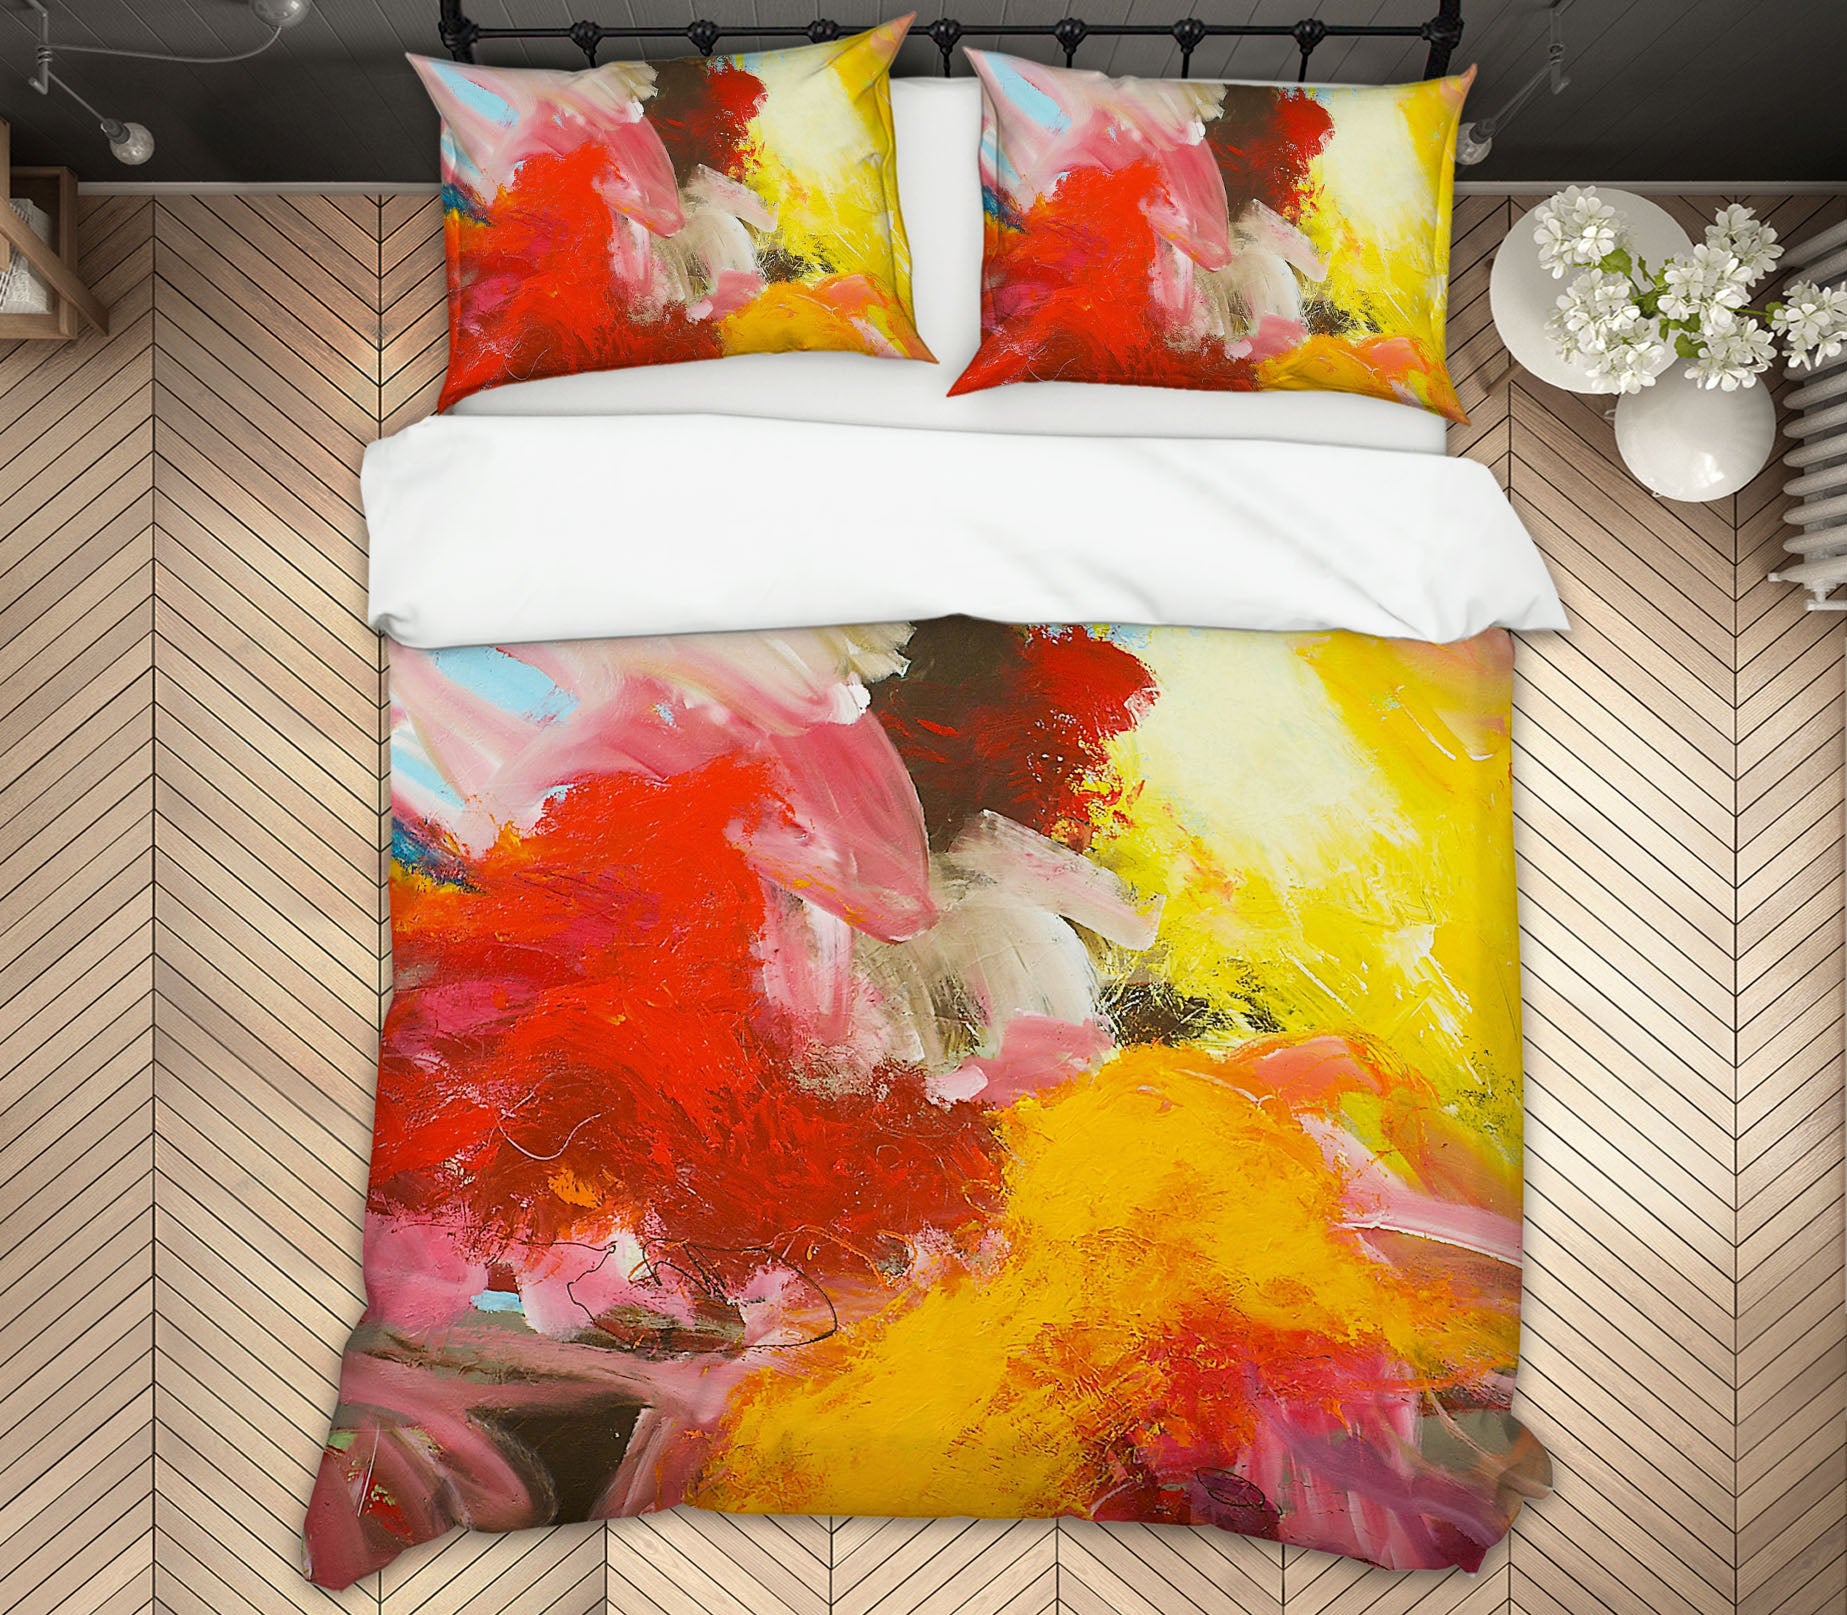 3D Fiery Red 109 Allan P. Friedlander Bedding Bed Pillowcases Quilt